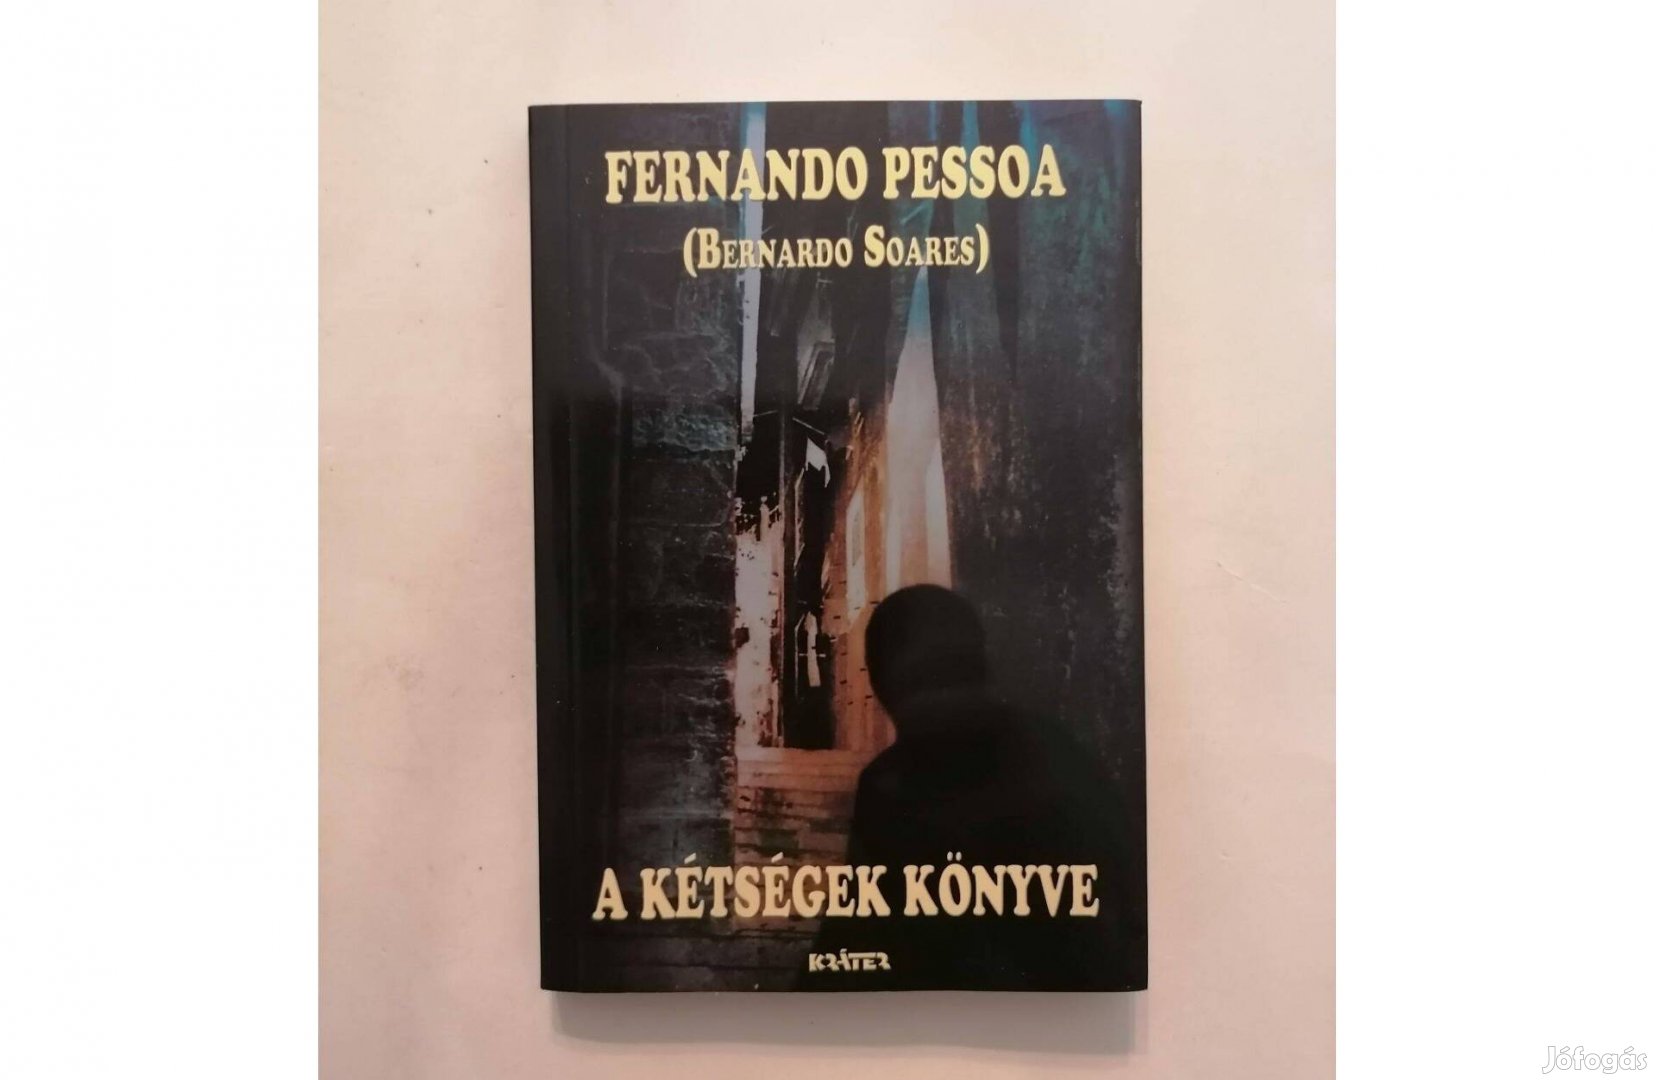 Fernando Pessoa (Bernardo Soares): A kétségek könyve